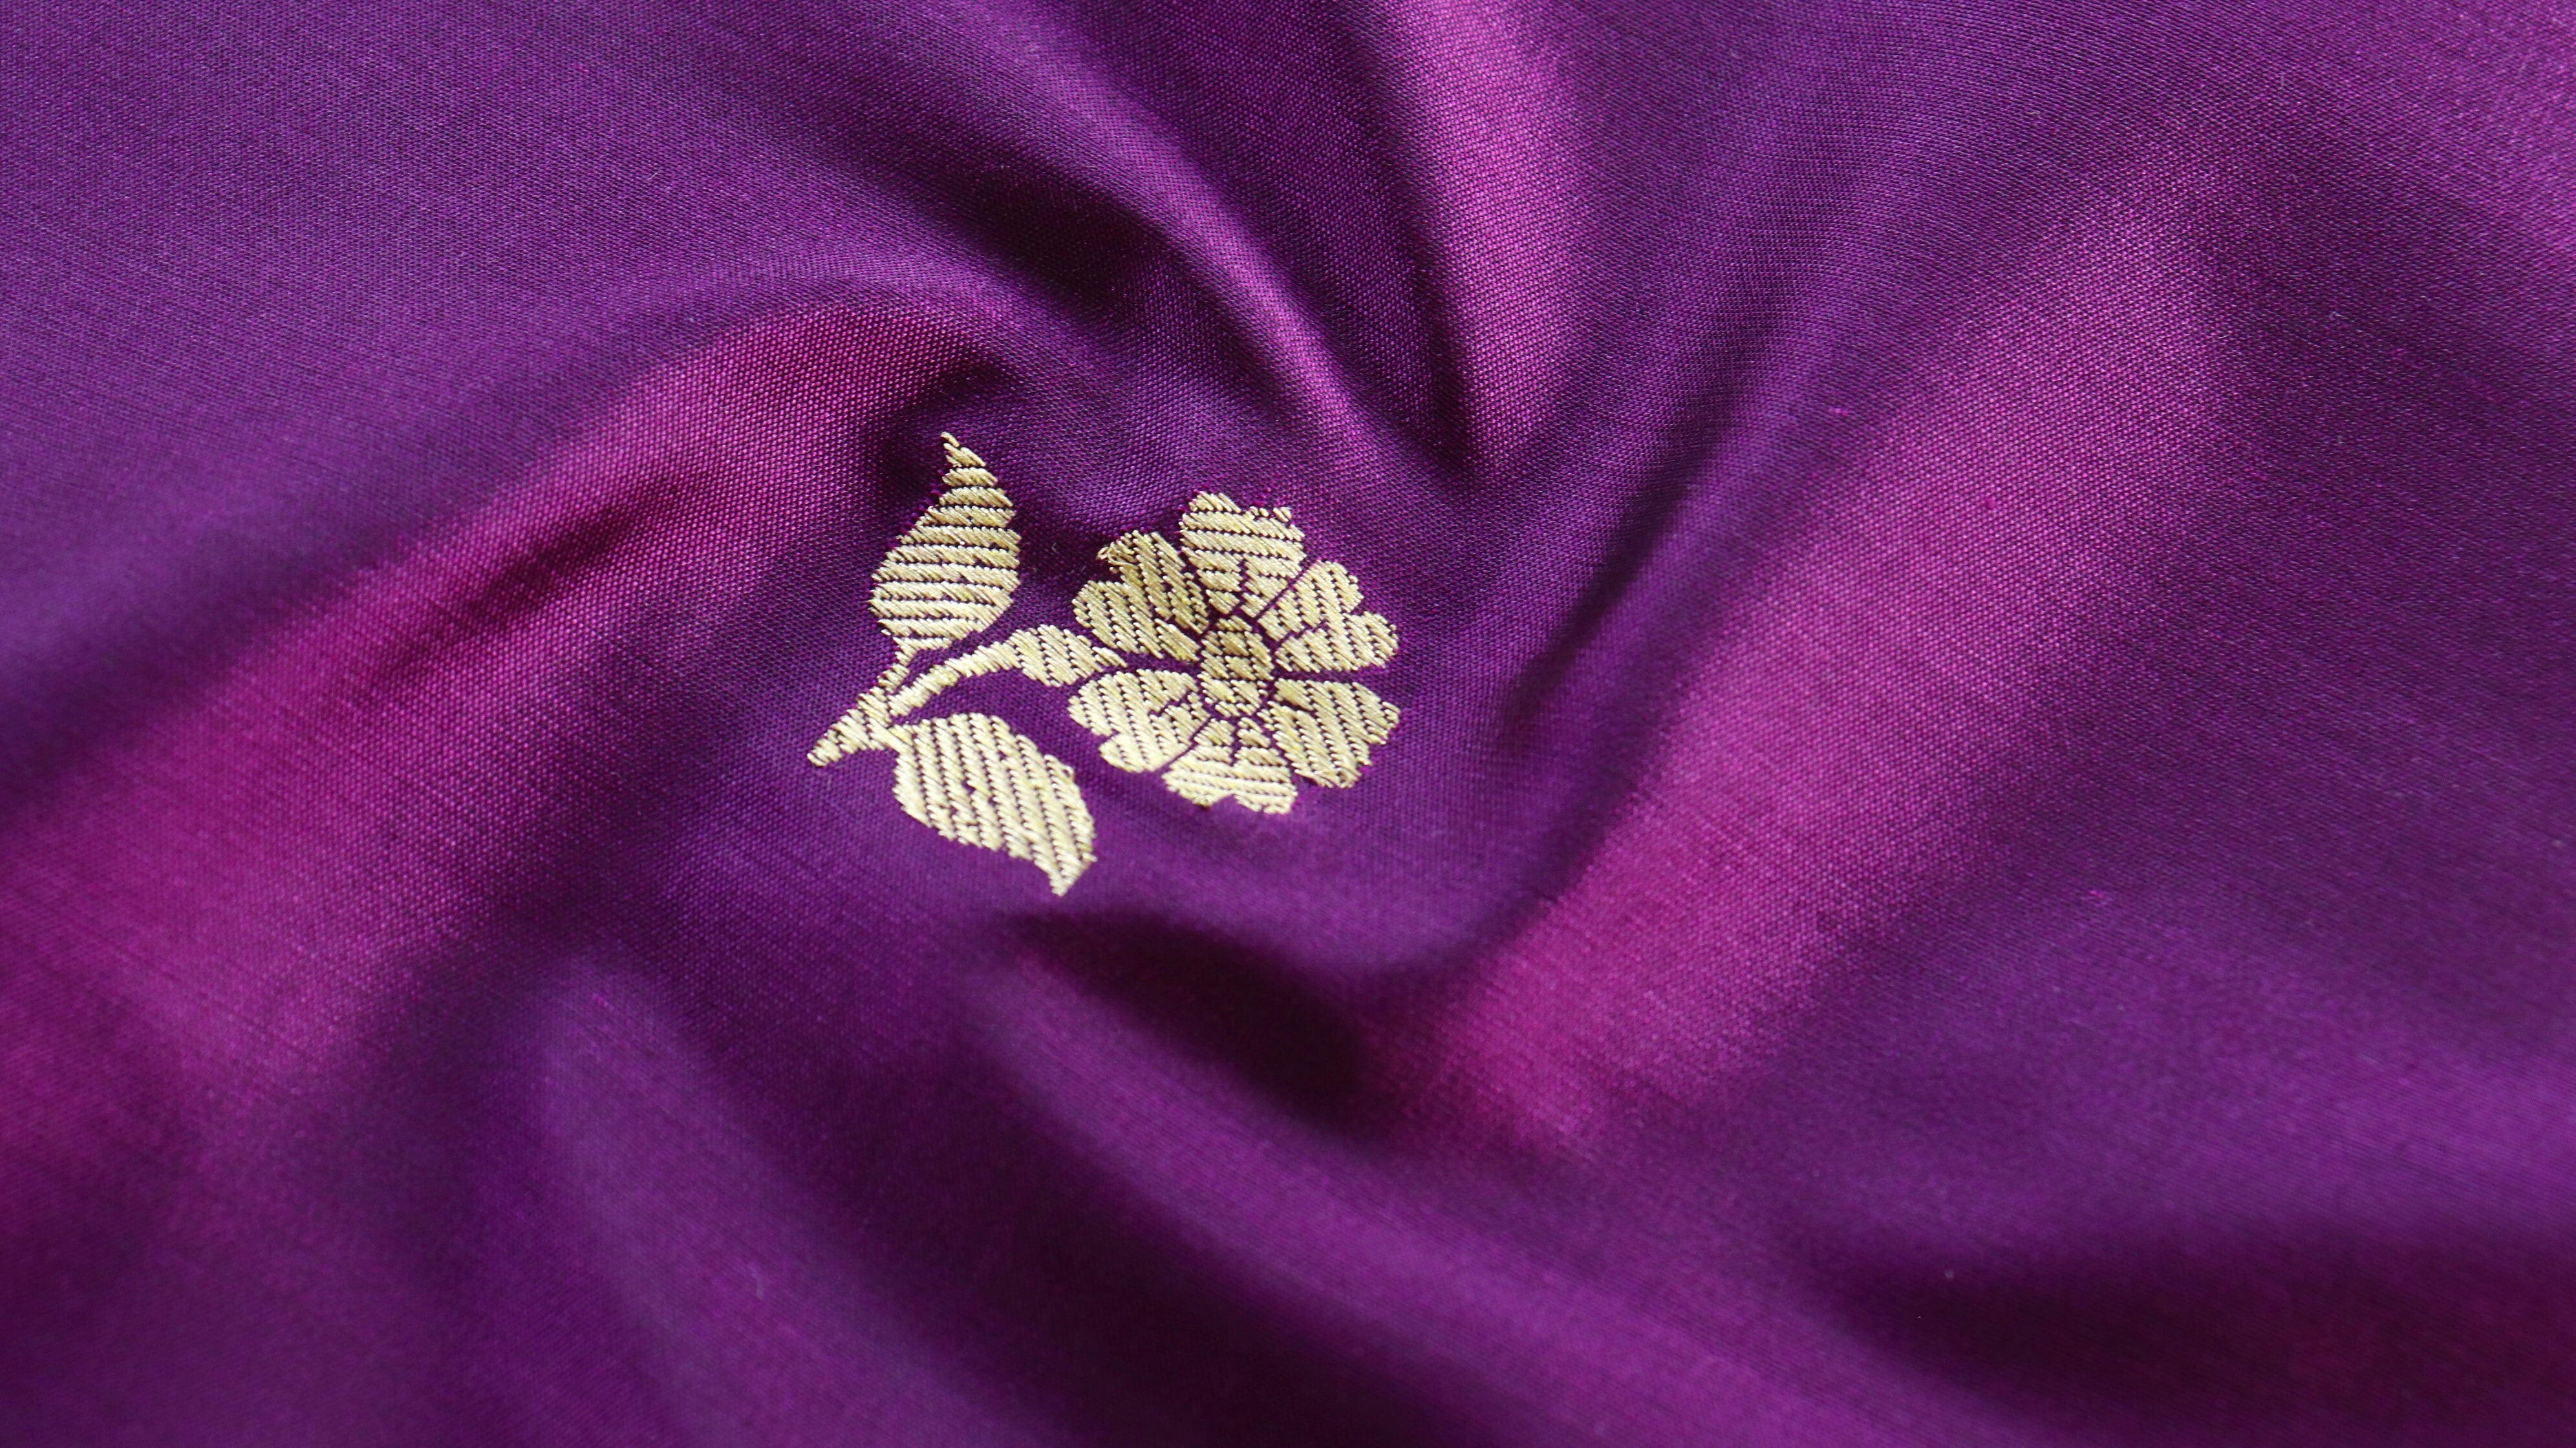 Handloom, Banarasi Handloom Saree, Alfi Saree, Tilfi Saree, Tilfi Saree Banaras, Tilfi, Banarasi Bunkar, Banarasi Bridal Wear, BridalWear, Banarasi Handloom Banarasi Purple Floral Motif Pure Silk Handloom Banarasi Fabric Banarasi Saree